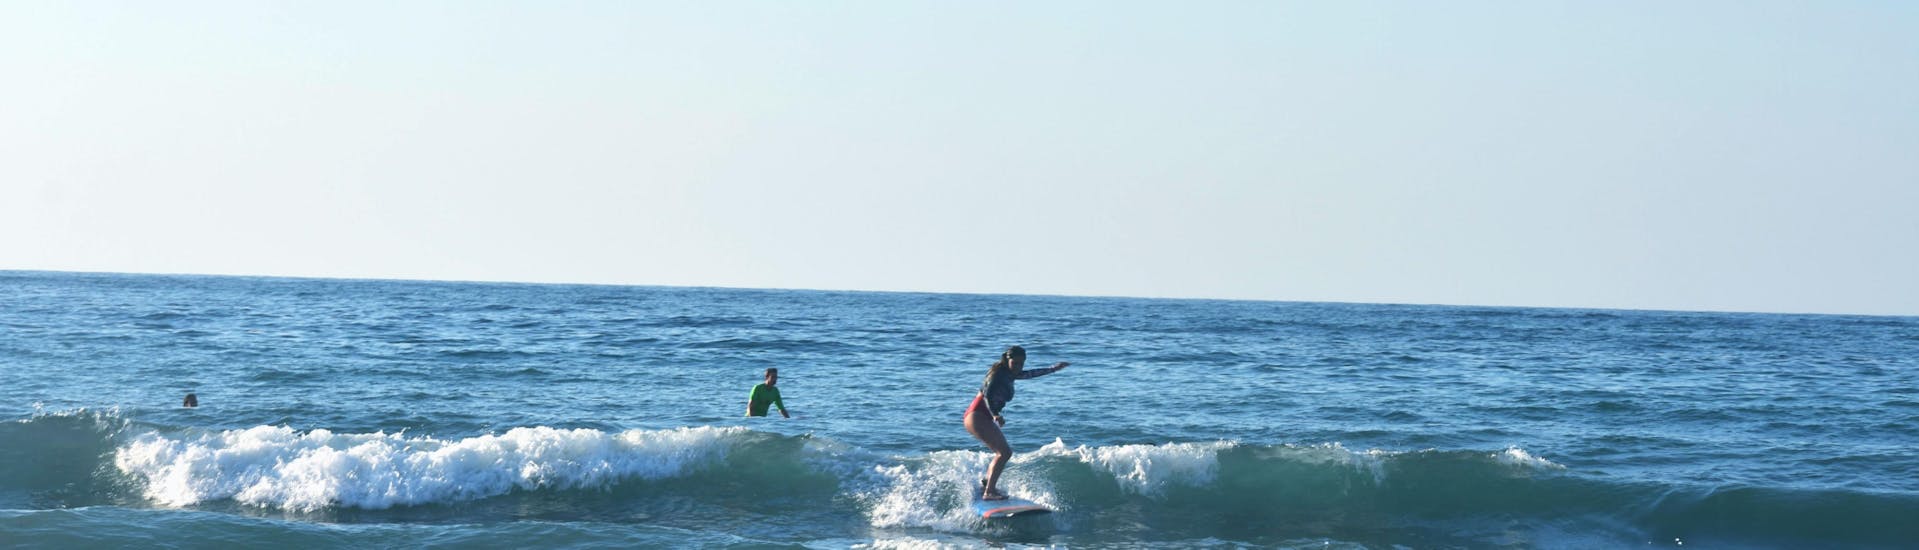 Surfkurs für Kinder & Erwachsene - Alle Level.